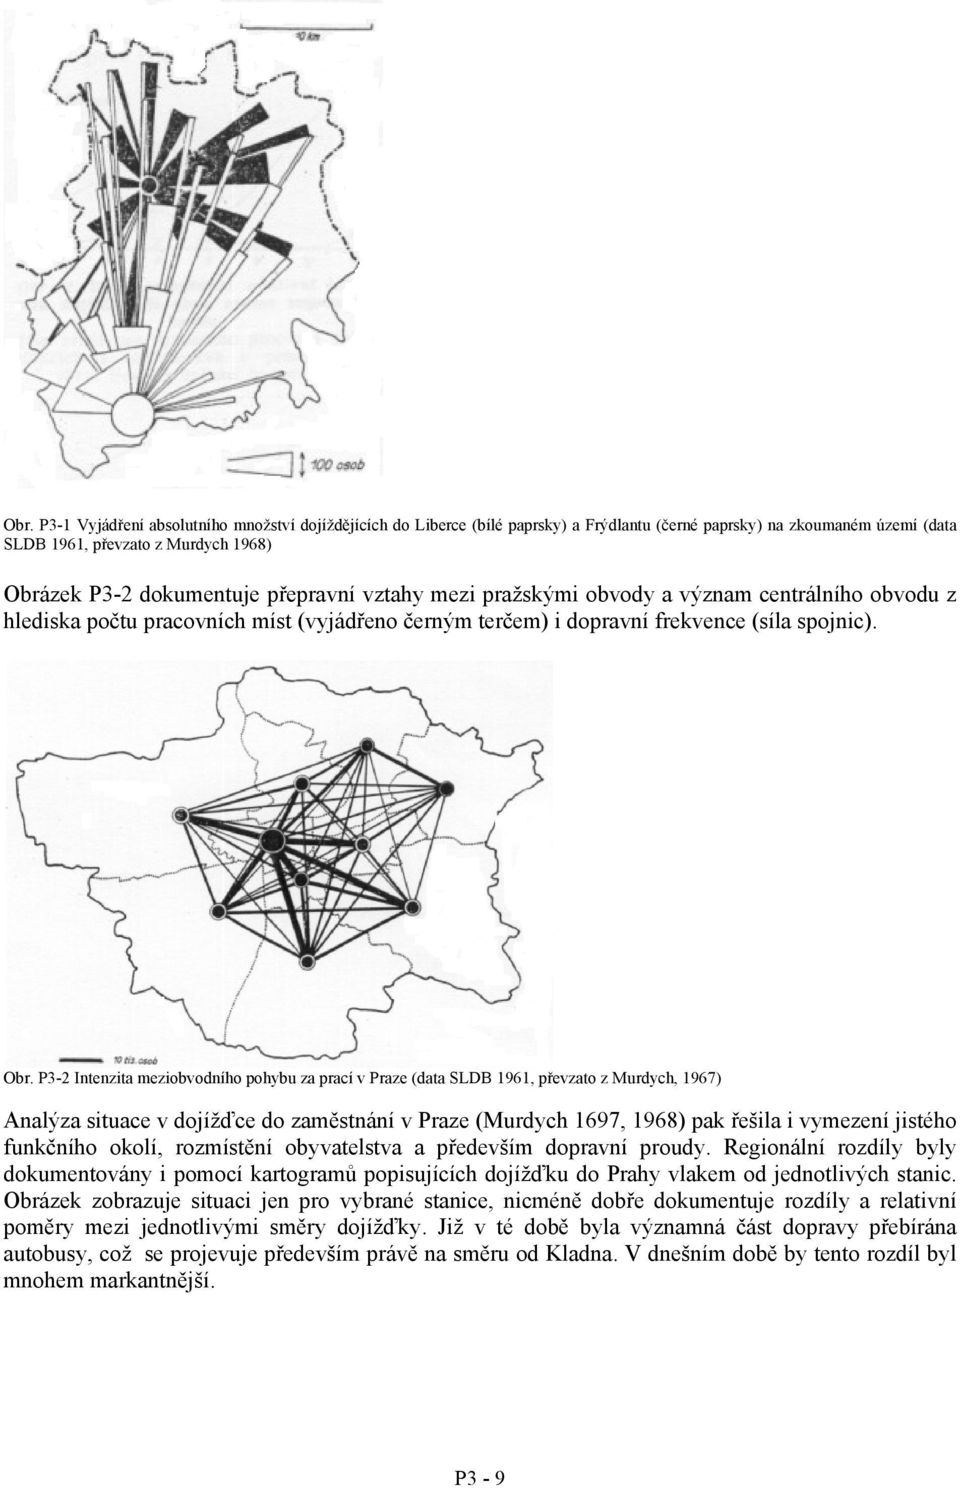 P3-2 Intenzita meziobvodního pohybu za prací v Praze (data SL 1961, převzato z Murdych, 1967) Analýza situace v dojížďce do zaměstnání v Praze (Murdych 1697, 1968) pak řešila i vymezení jistého